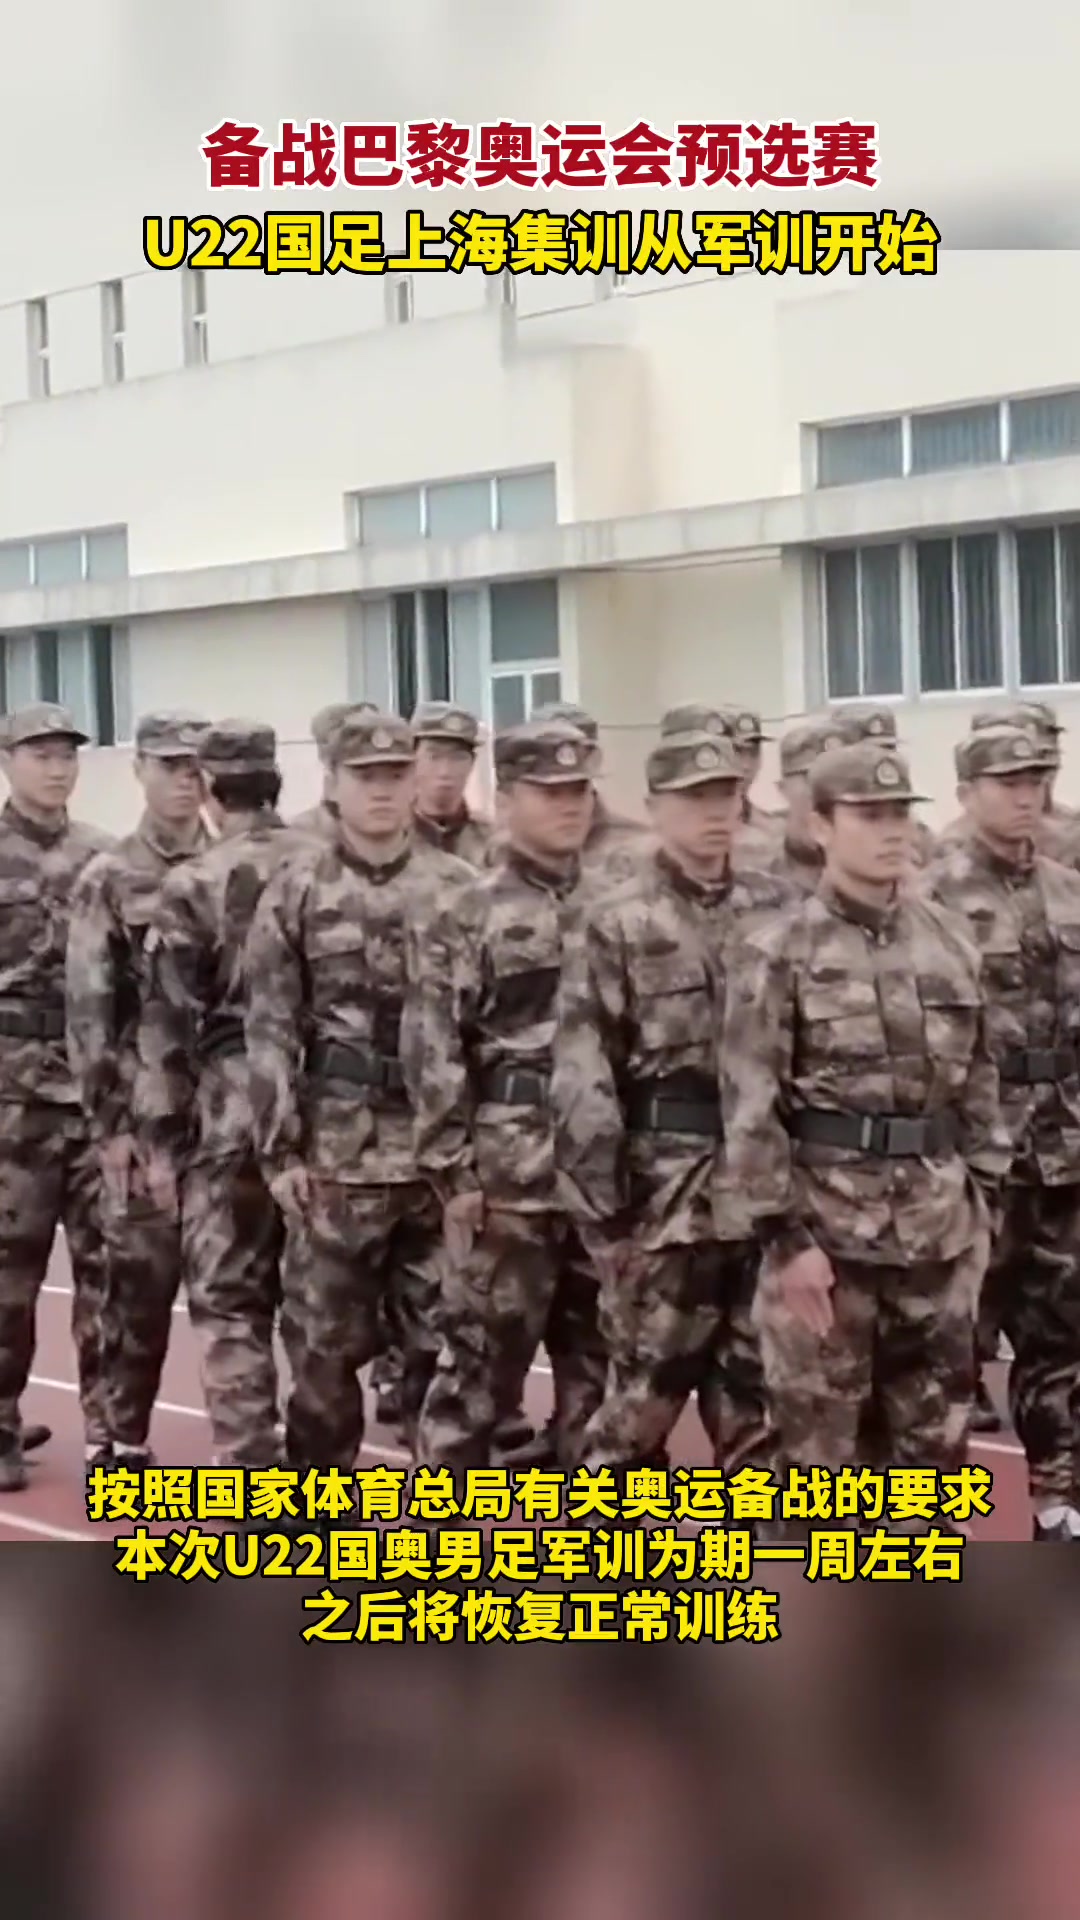 中国U22男足集训备战奥运预选赛从军训开始